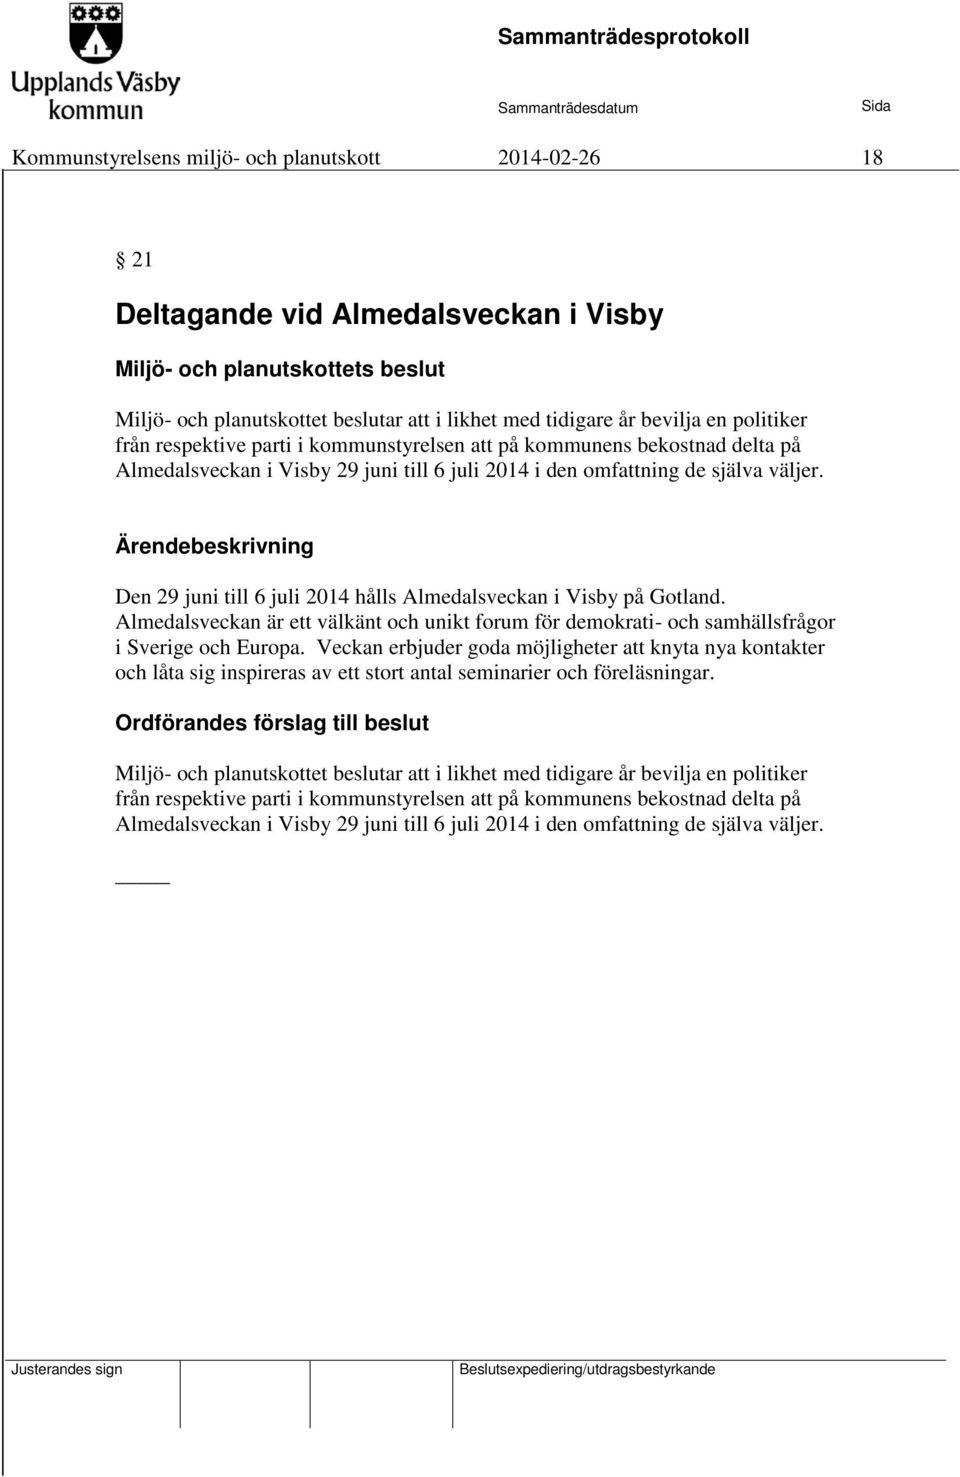 Ärendebeskrivning Den 29 juni till 6 juli 2014 hålls Almedalsveckan i Visby på Gotland. Almedalsveckan är ett välkänt och unikt forum för demokrati- och samhällsfrågor i Sverige och Europa.